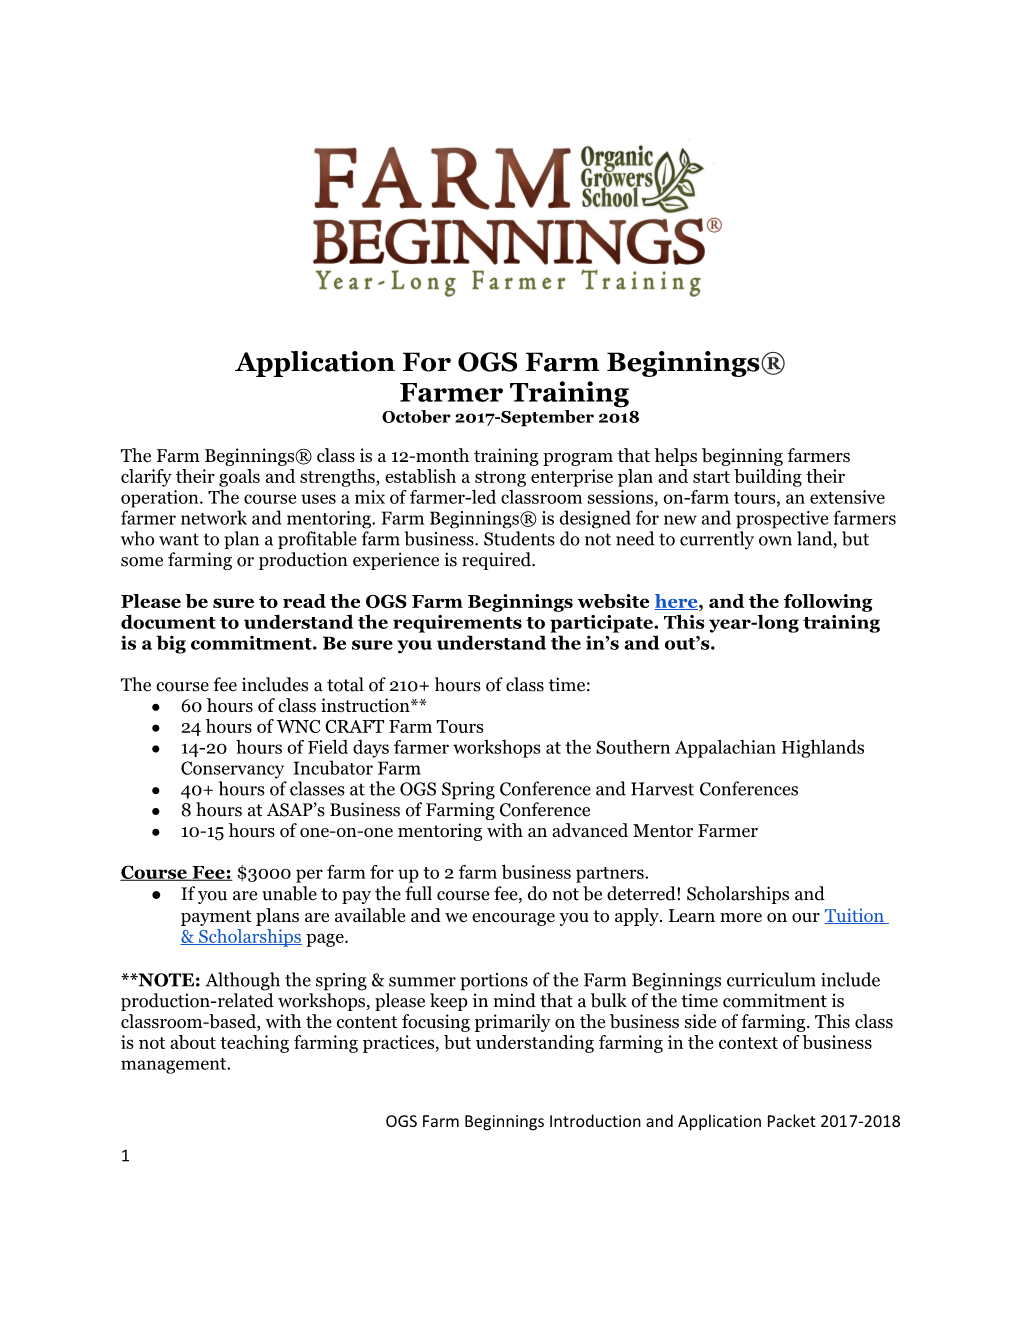 Application for OGS Farm Beginnings